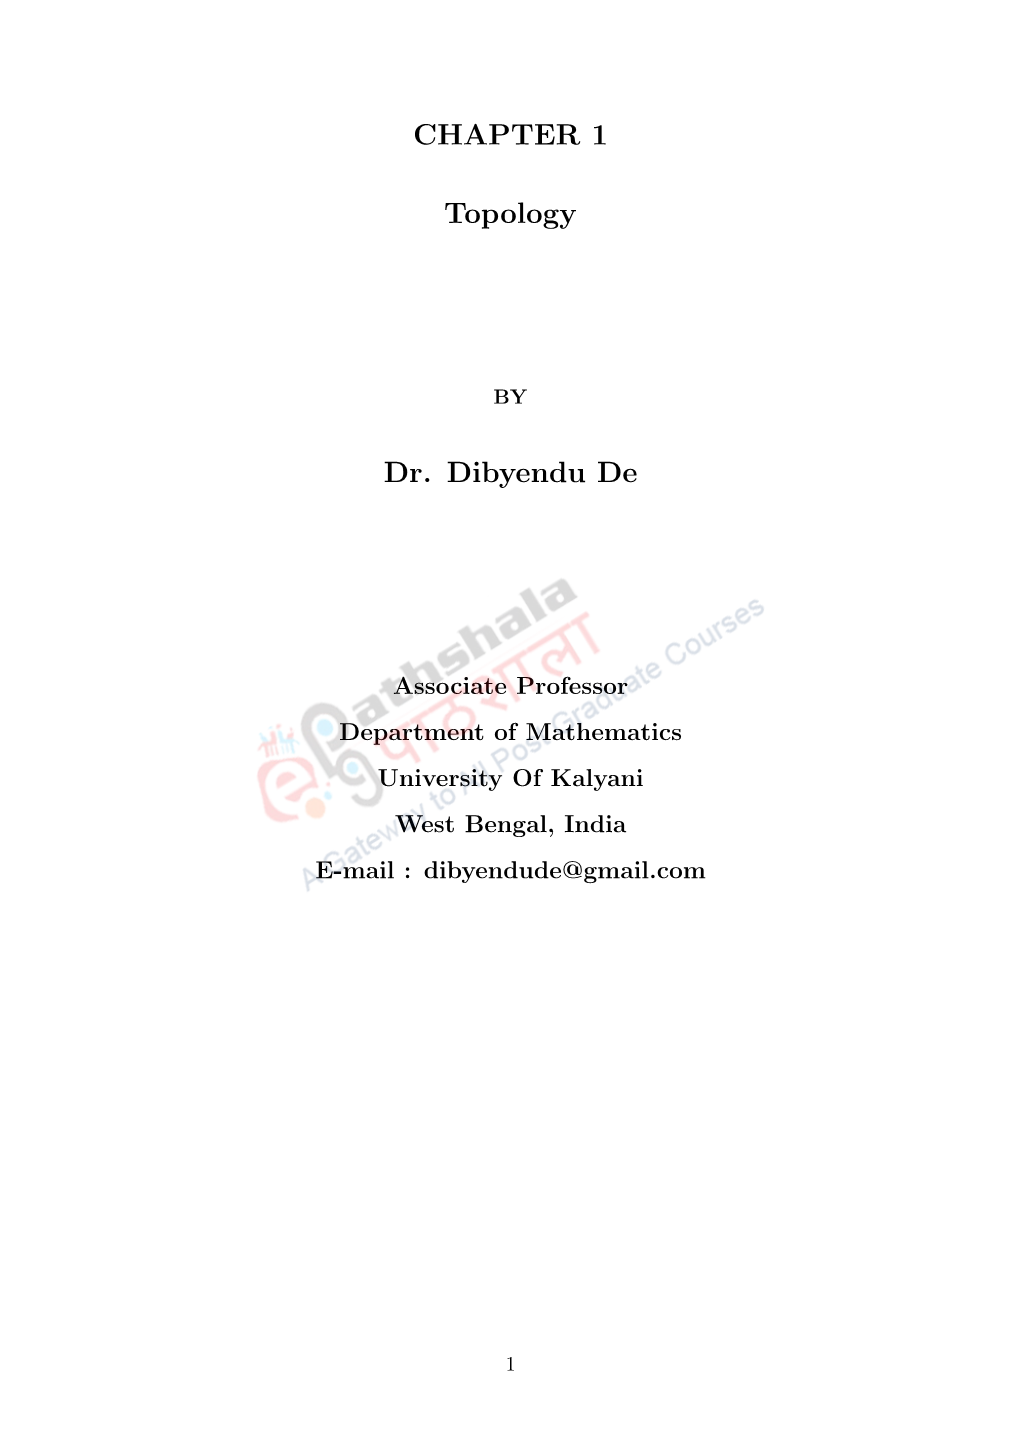 CHAPTER 1 Topology Dr. Dibyendu De